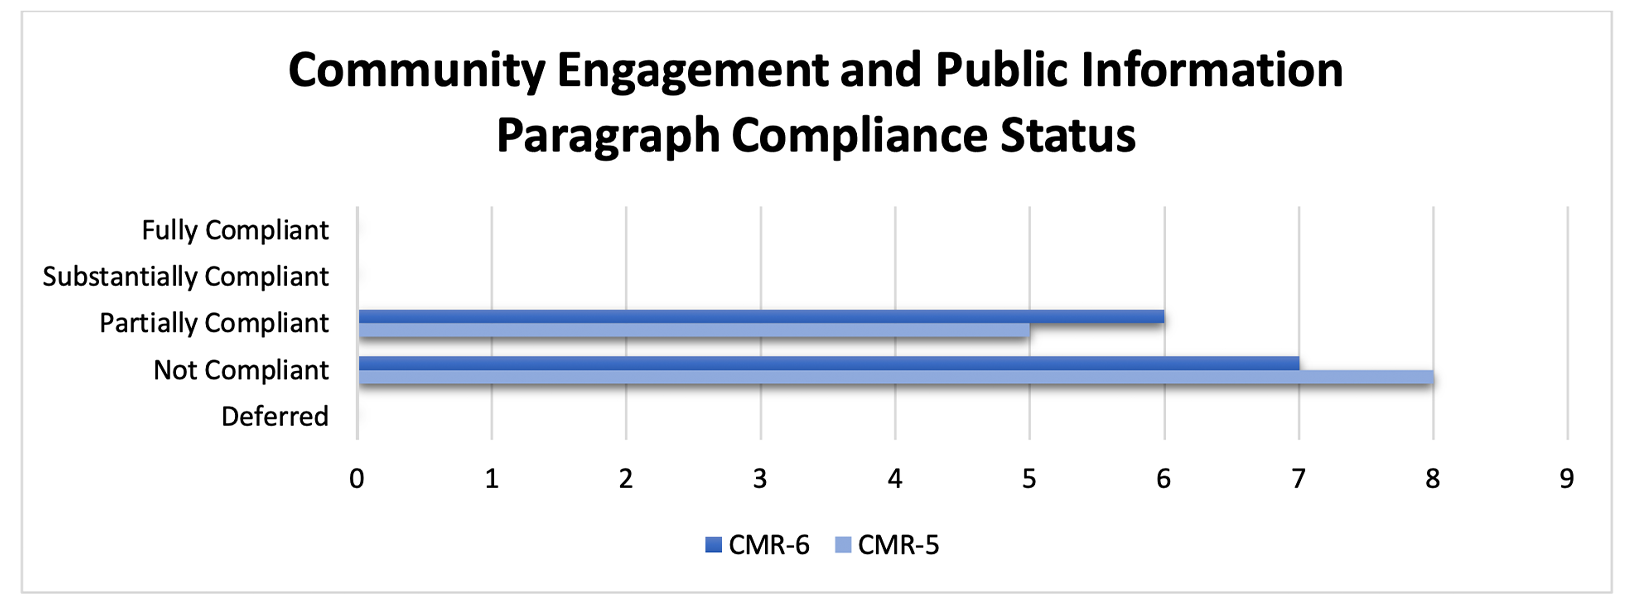 Figure 8. Community Engagement and Public Information: Paragraph Compliance Status